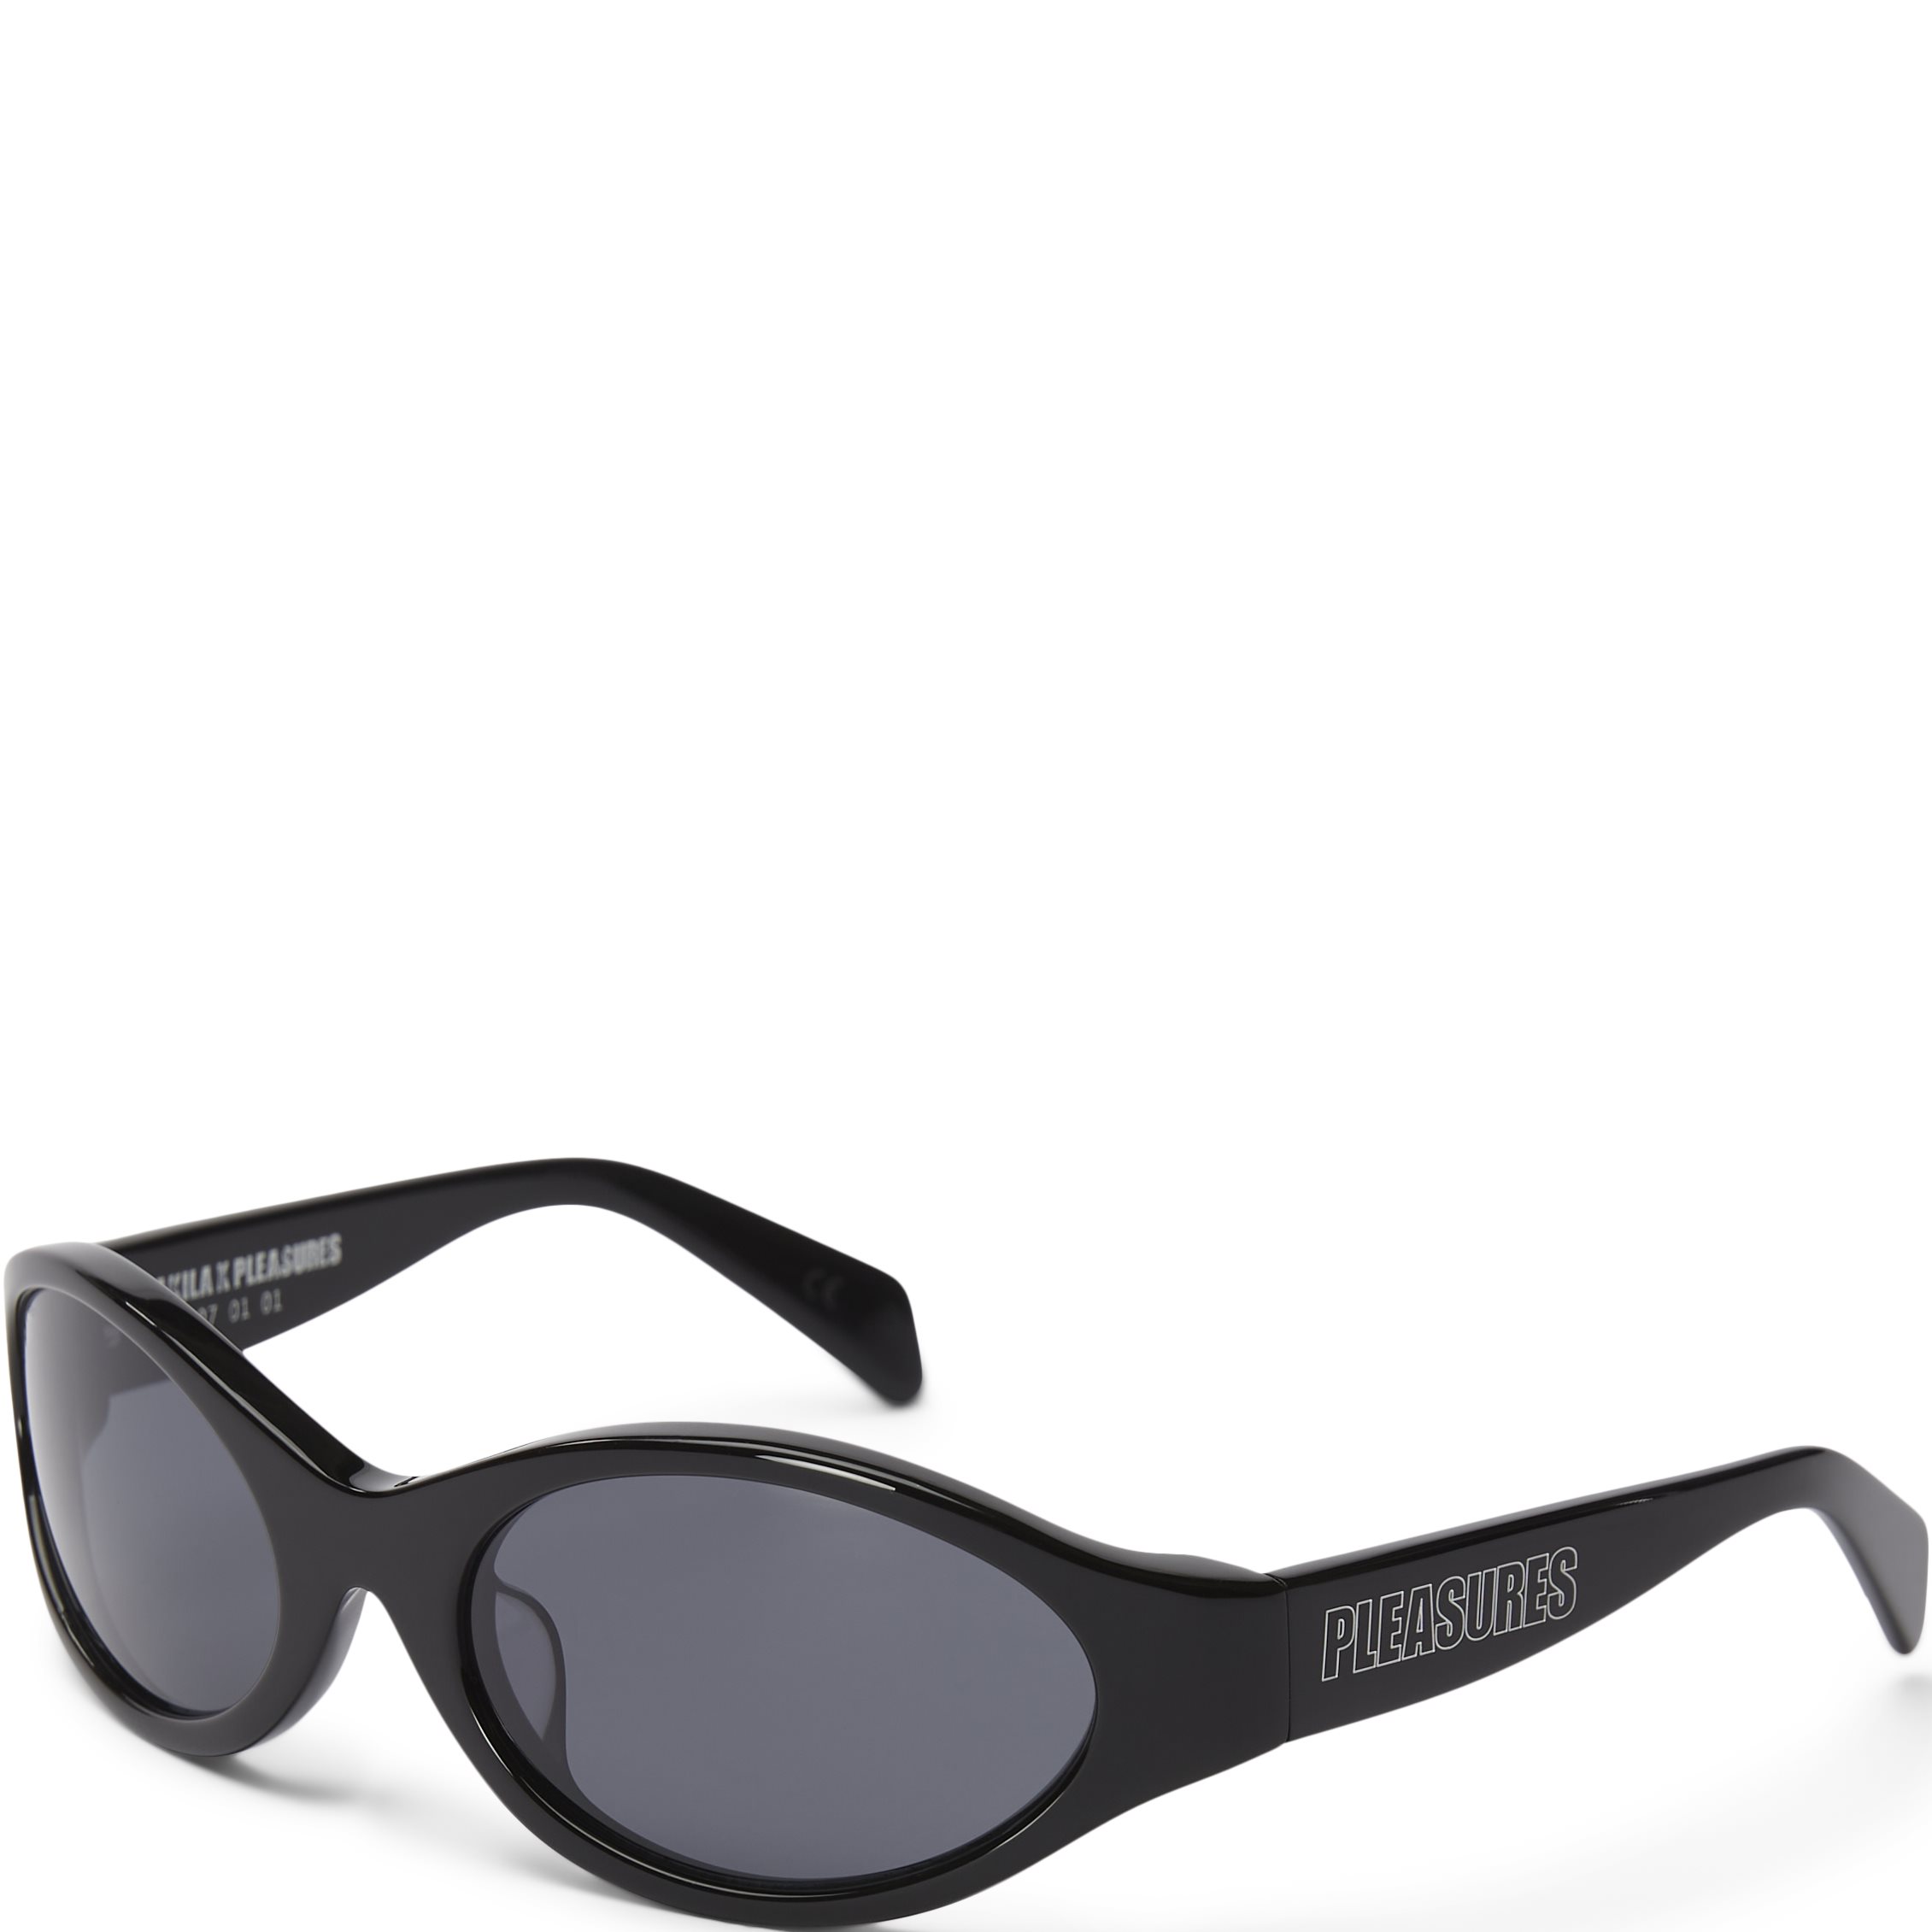 Reflex Sunglasses - Accessories - Black